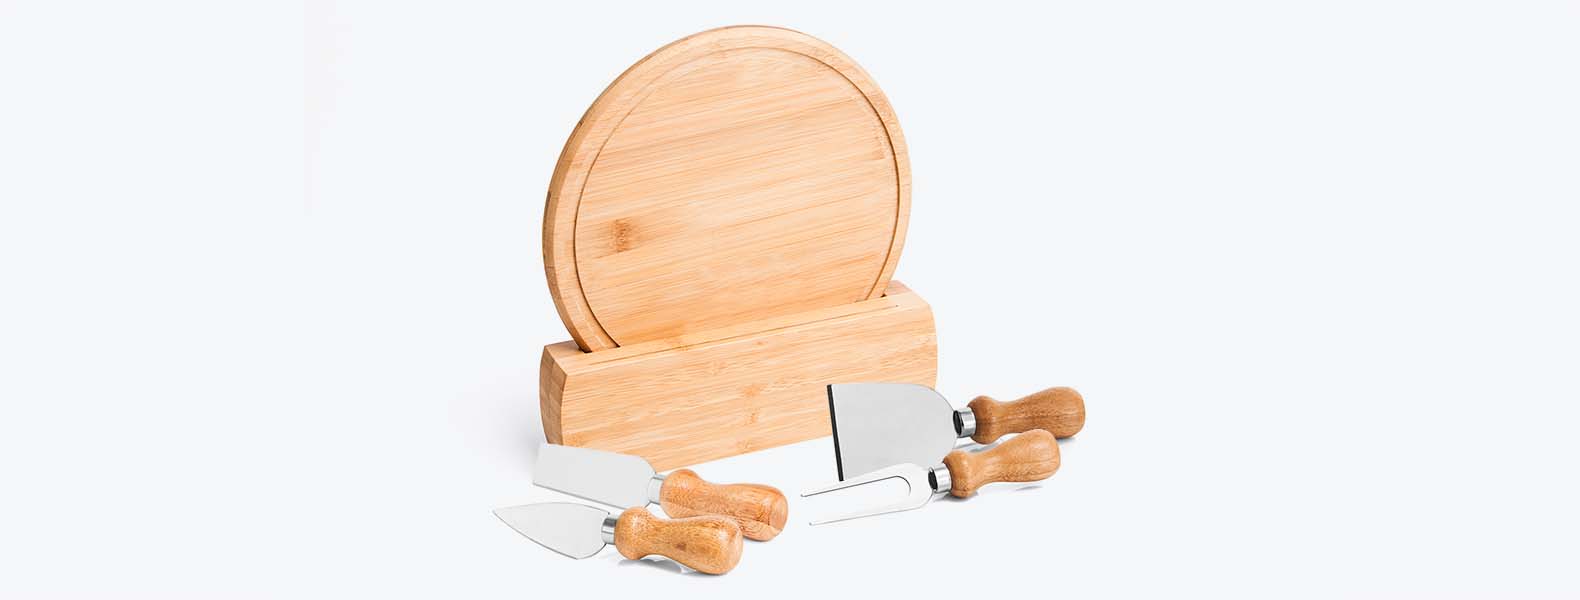 Kit para queijo. Conta com tábua redonda e suporte em bambu; três facas e garfo para queijos. Tábua confeccionada com tripla camada invertida, para dar maior durabilidade e não deformar com o passar do tempo.